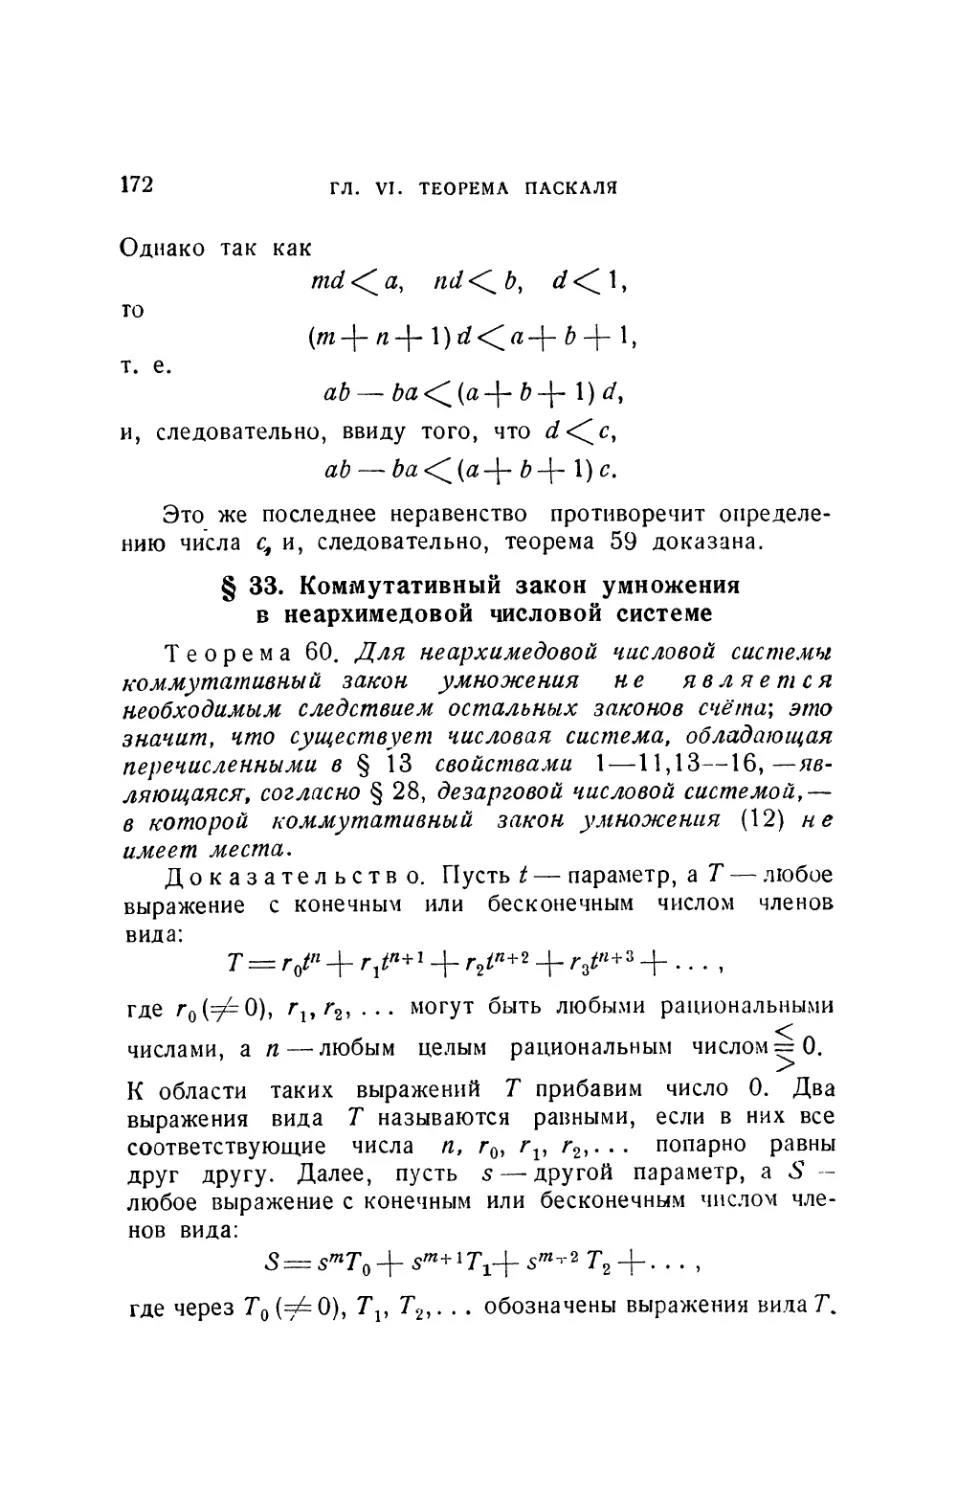 § 33. Коммутативный закон умножения в неархимедовой числовой системе